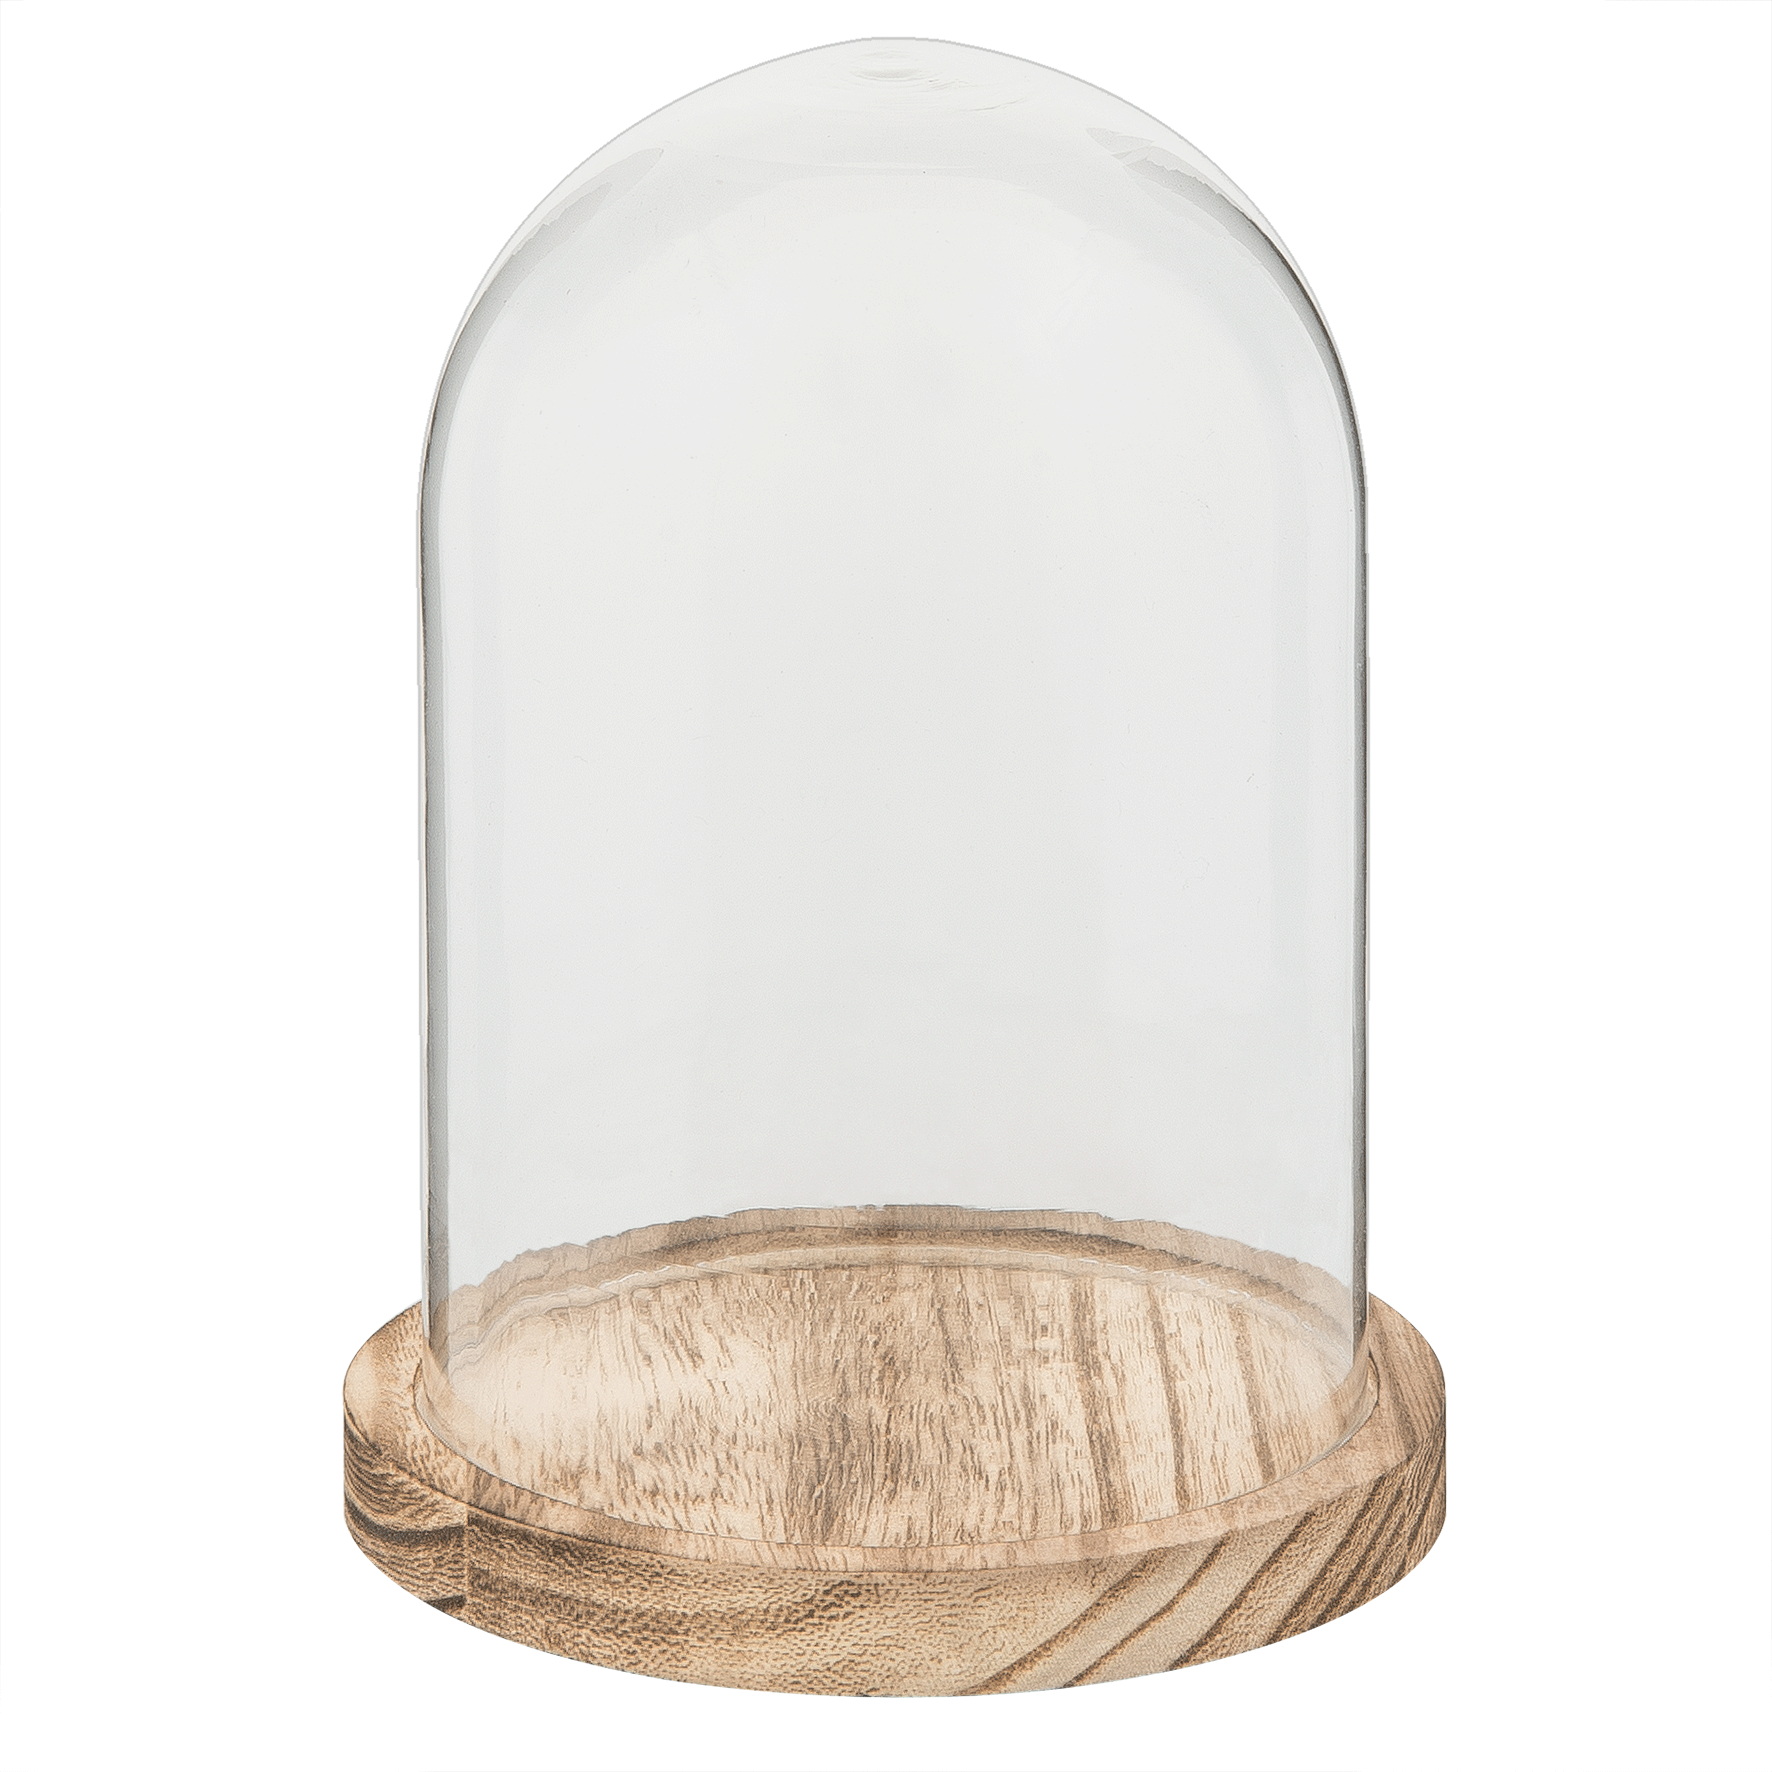 HAES DECO - Decoratieve glazen stolp met houten voet, diameter 12 cm en hoogte 17 cm - ST021681 - HAES deco